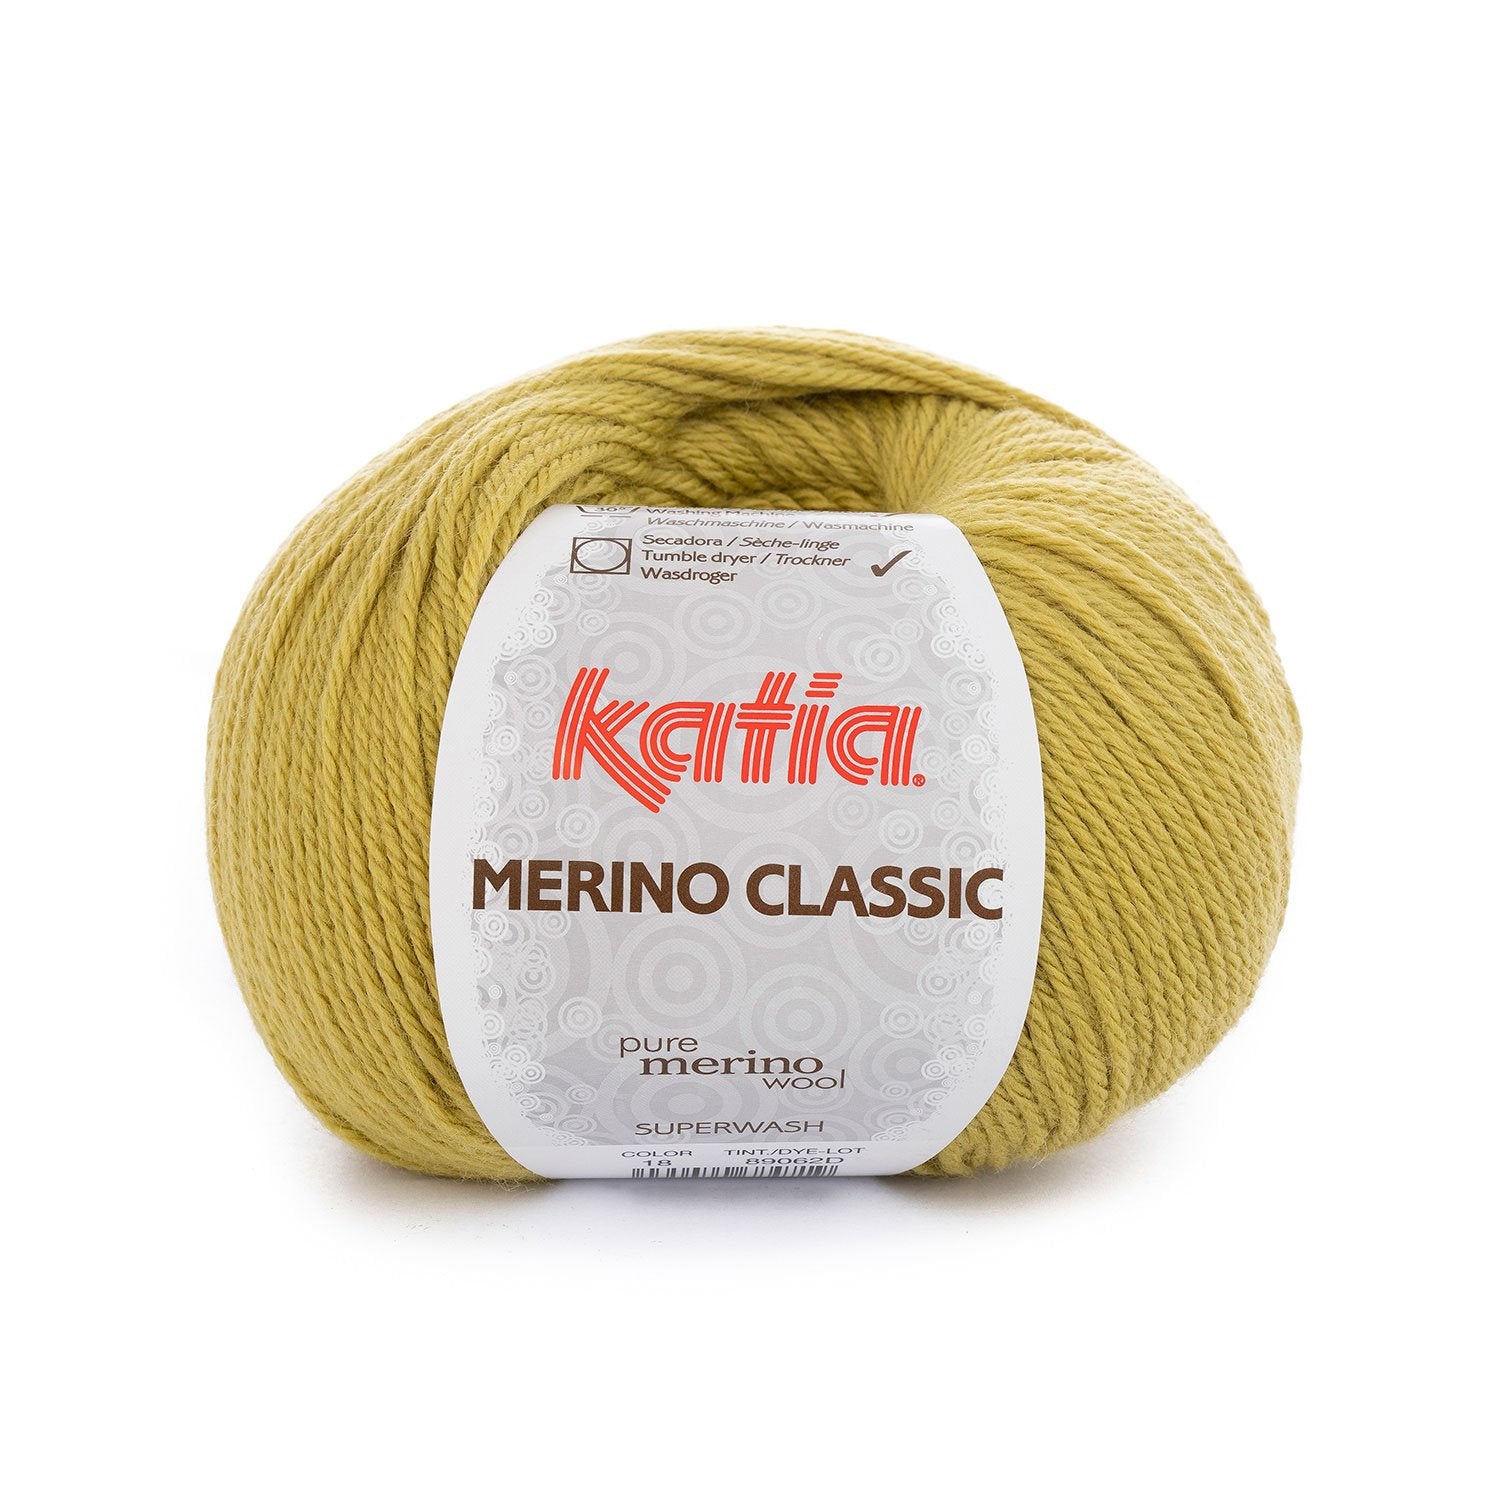 Lana Merino Classic de Katia - Mezcla de merino y acrílico para prenda